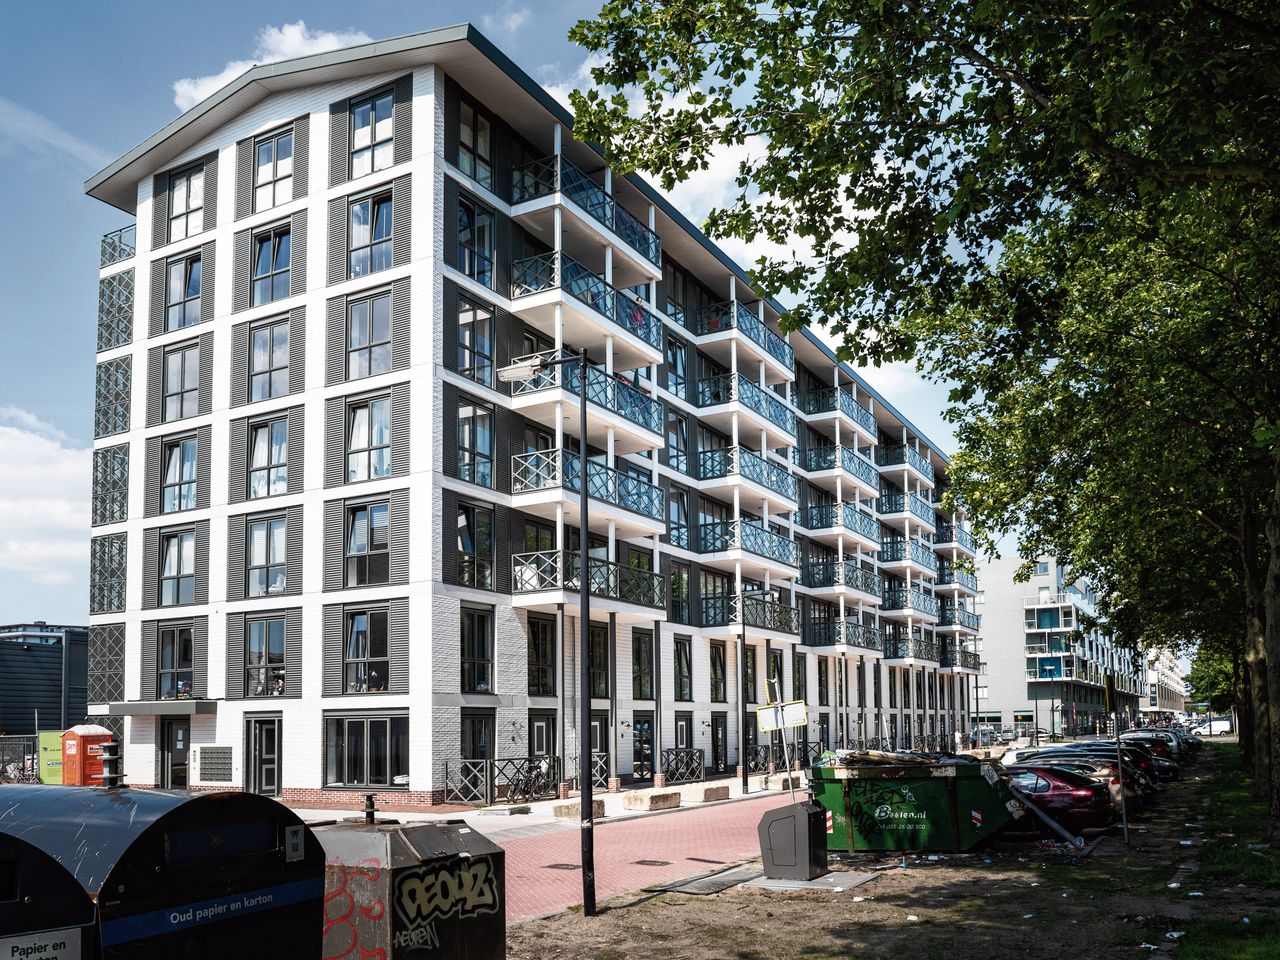 De balkonhekken van de flats in Mi Oso, een nieuwe wijk in Amsterdam Zuidoost, zijn geïnspireerd door de officierswoningen van Fort Zeelandia. „Ik heb gespeeld met associaties en verwijzingen, waarvan ik hoop dat ze worden herkend.”